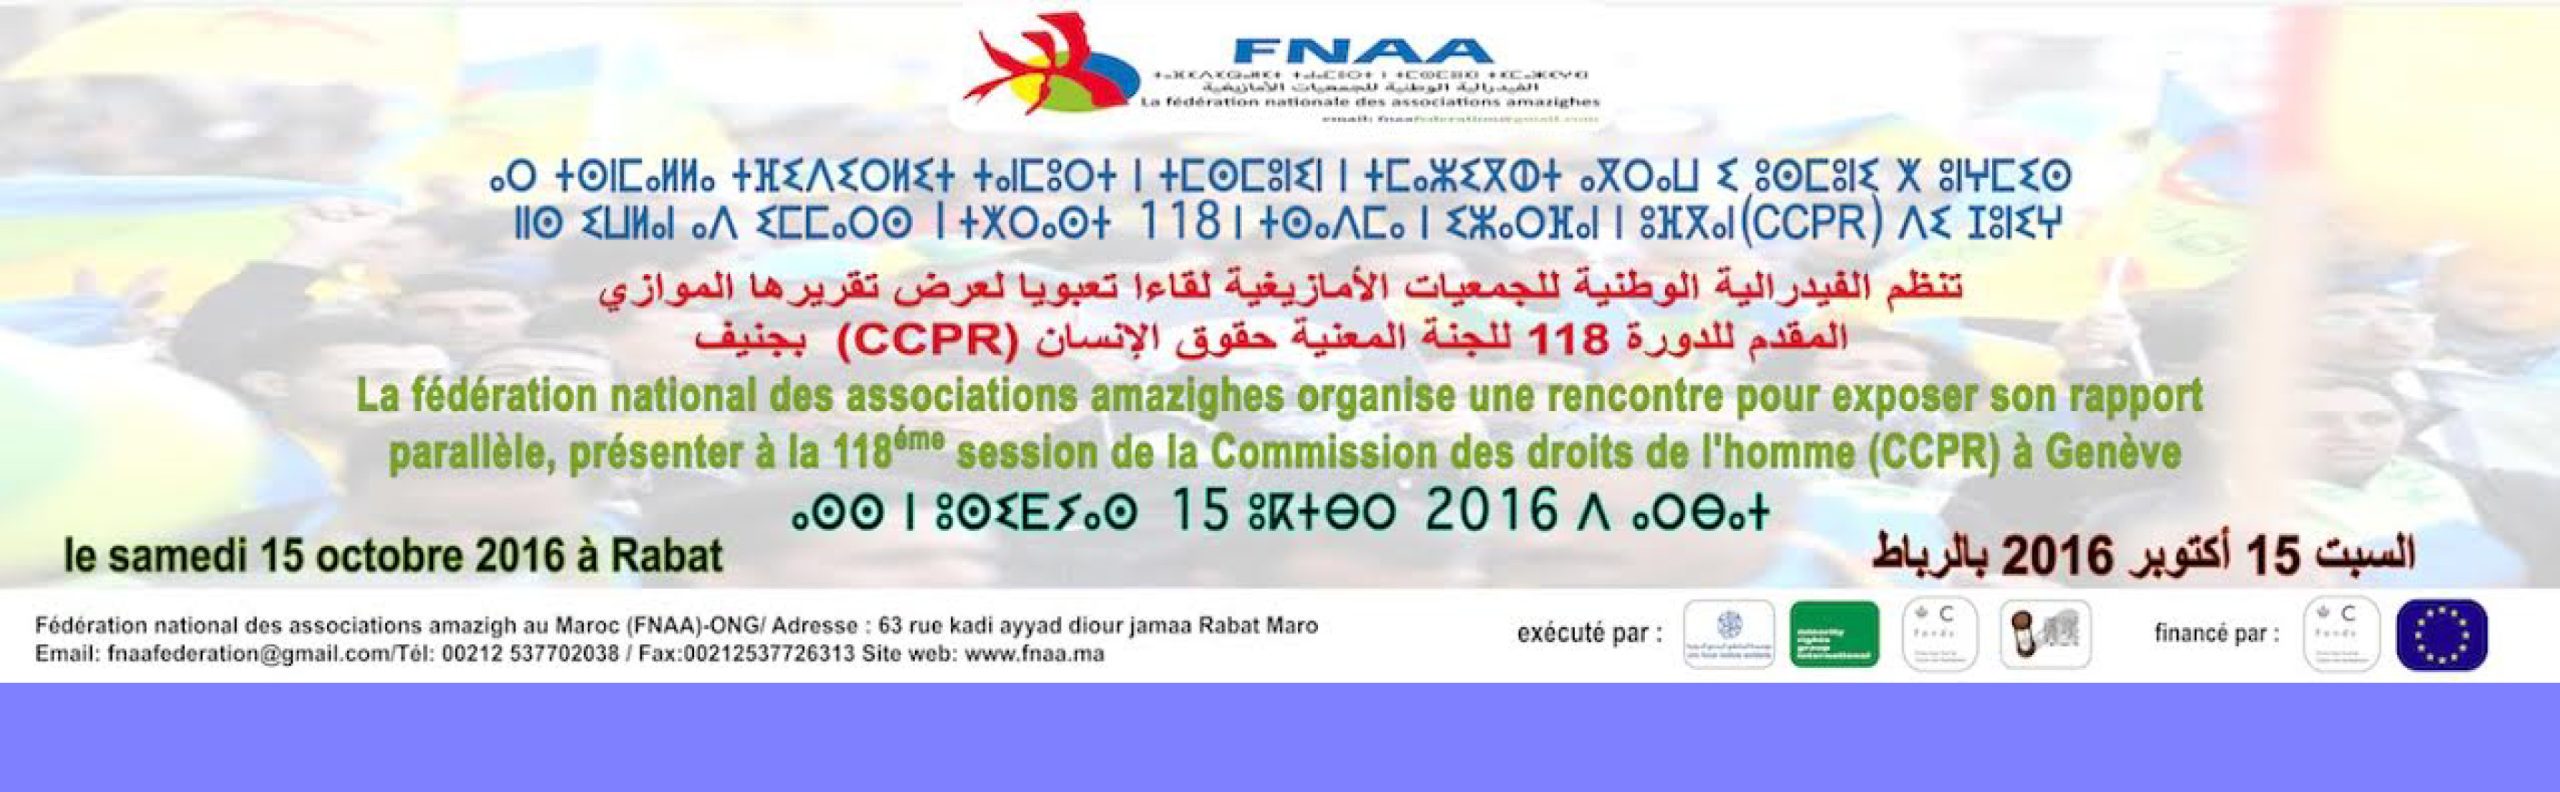 التقرير الموازي للفدرالية الوطنية للجمعيات الأمازيغية بالمغرب  حول الحقوق اللغوية والثقافية الأمازيغية بالمغرب